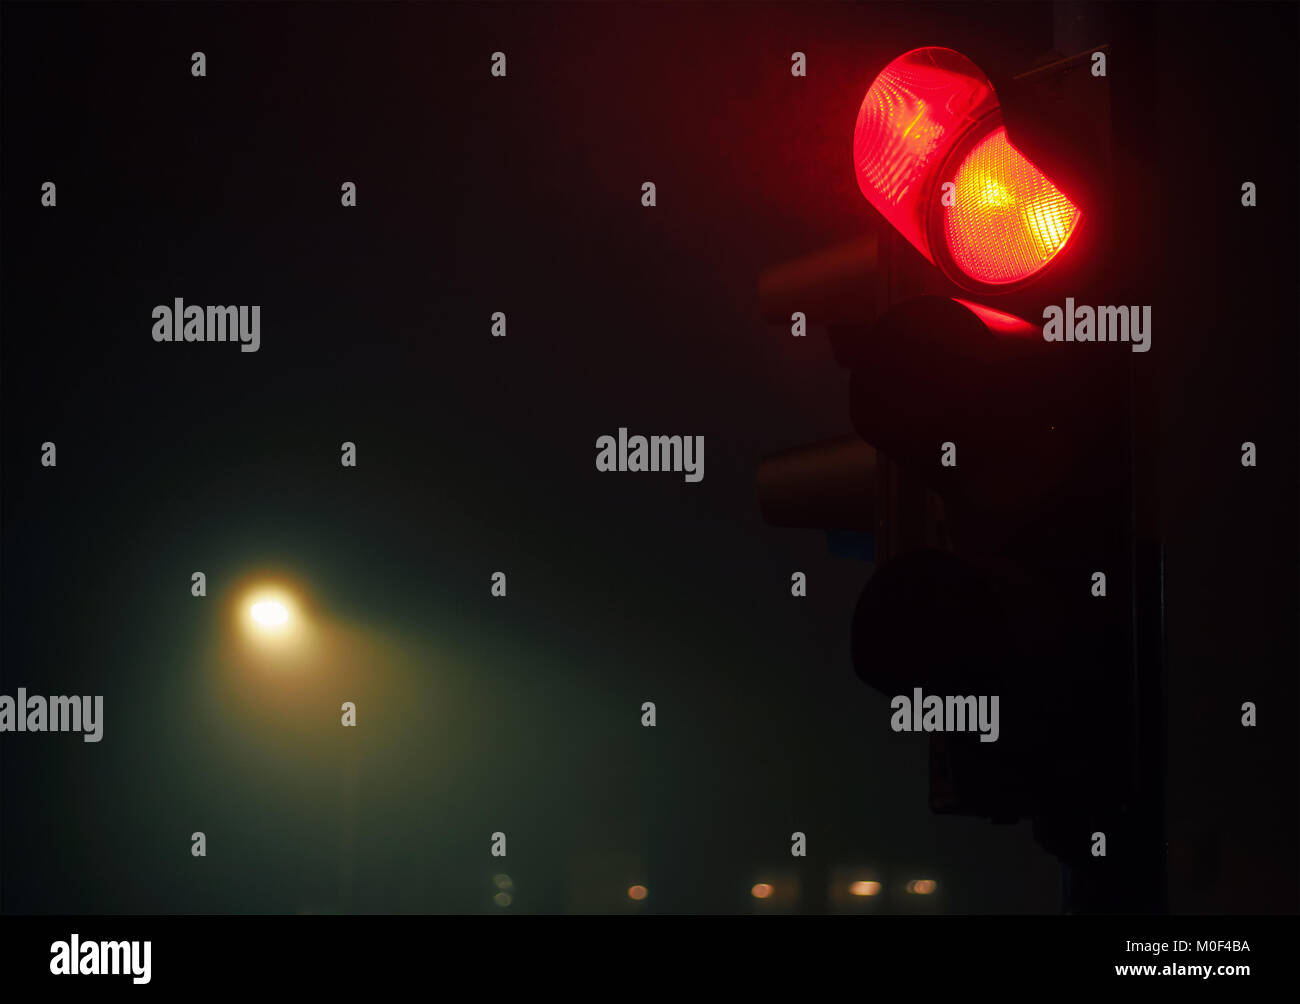 Detailansicht der Semaphore, Rotlicht und neblige Nacht Atmosphäre. Stockfoto